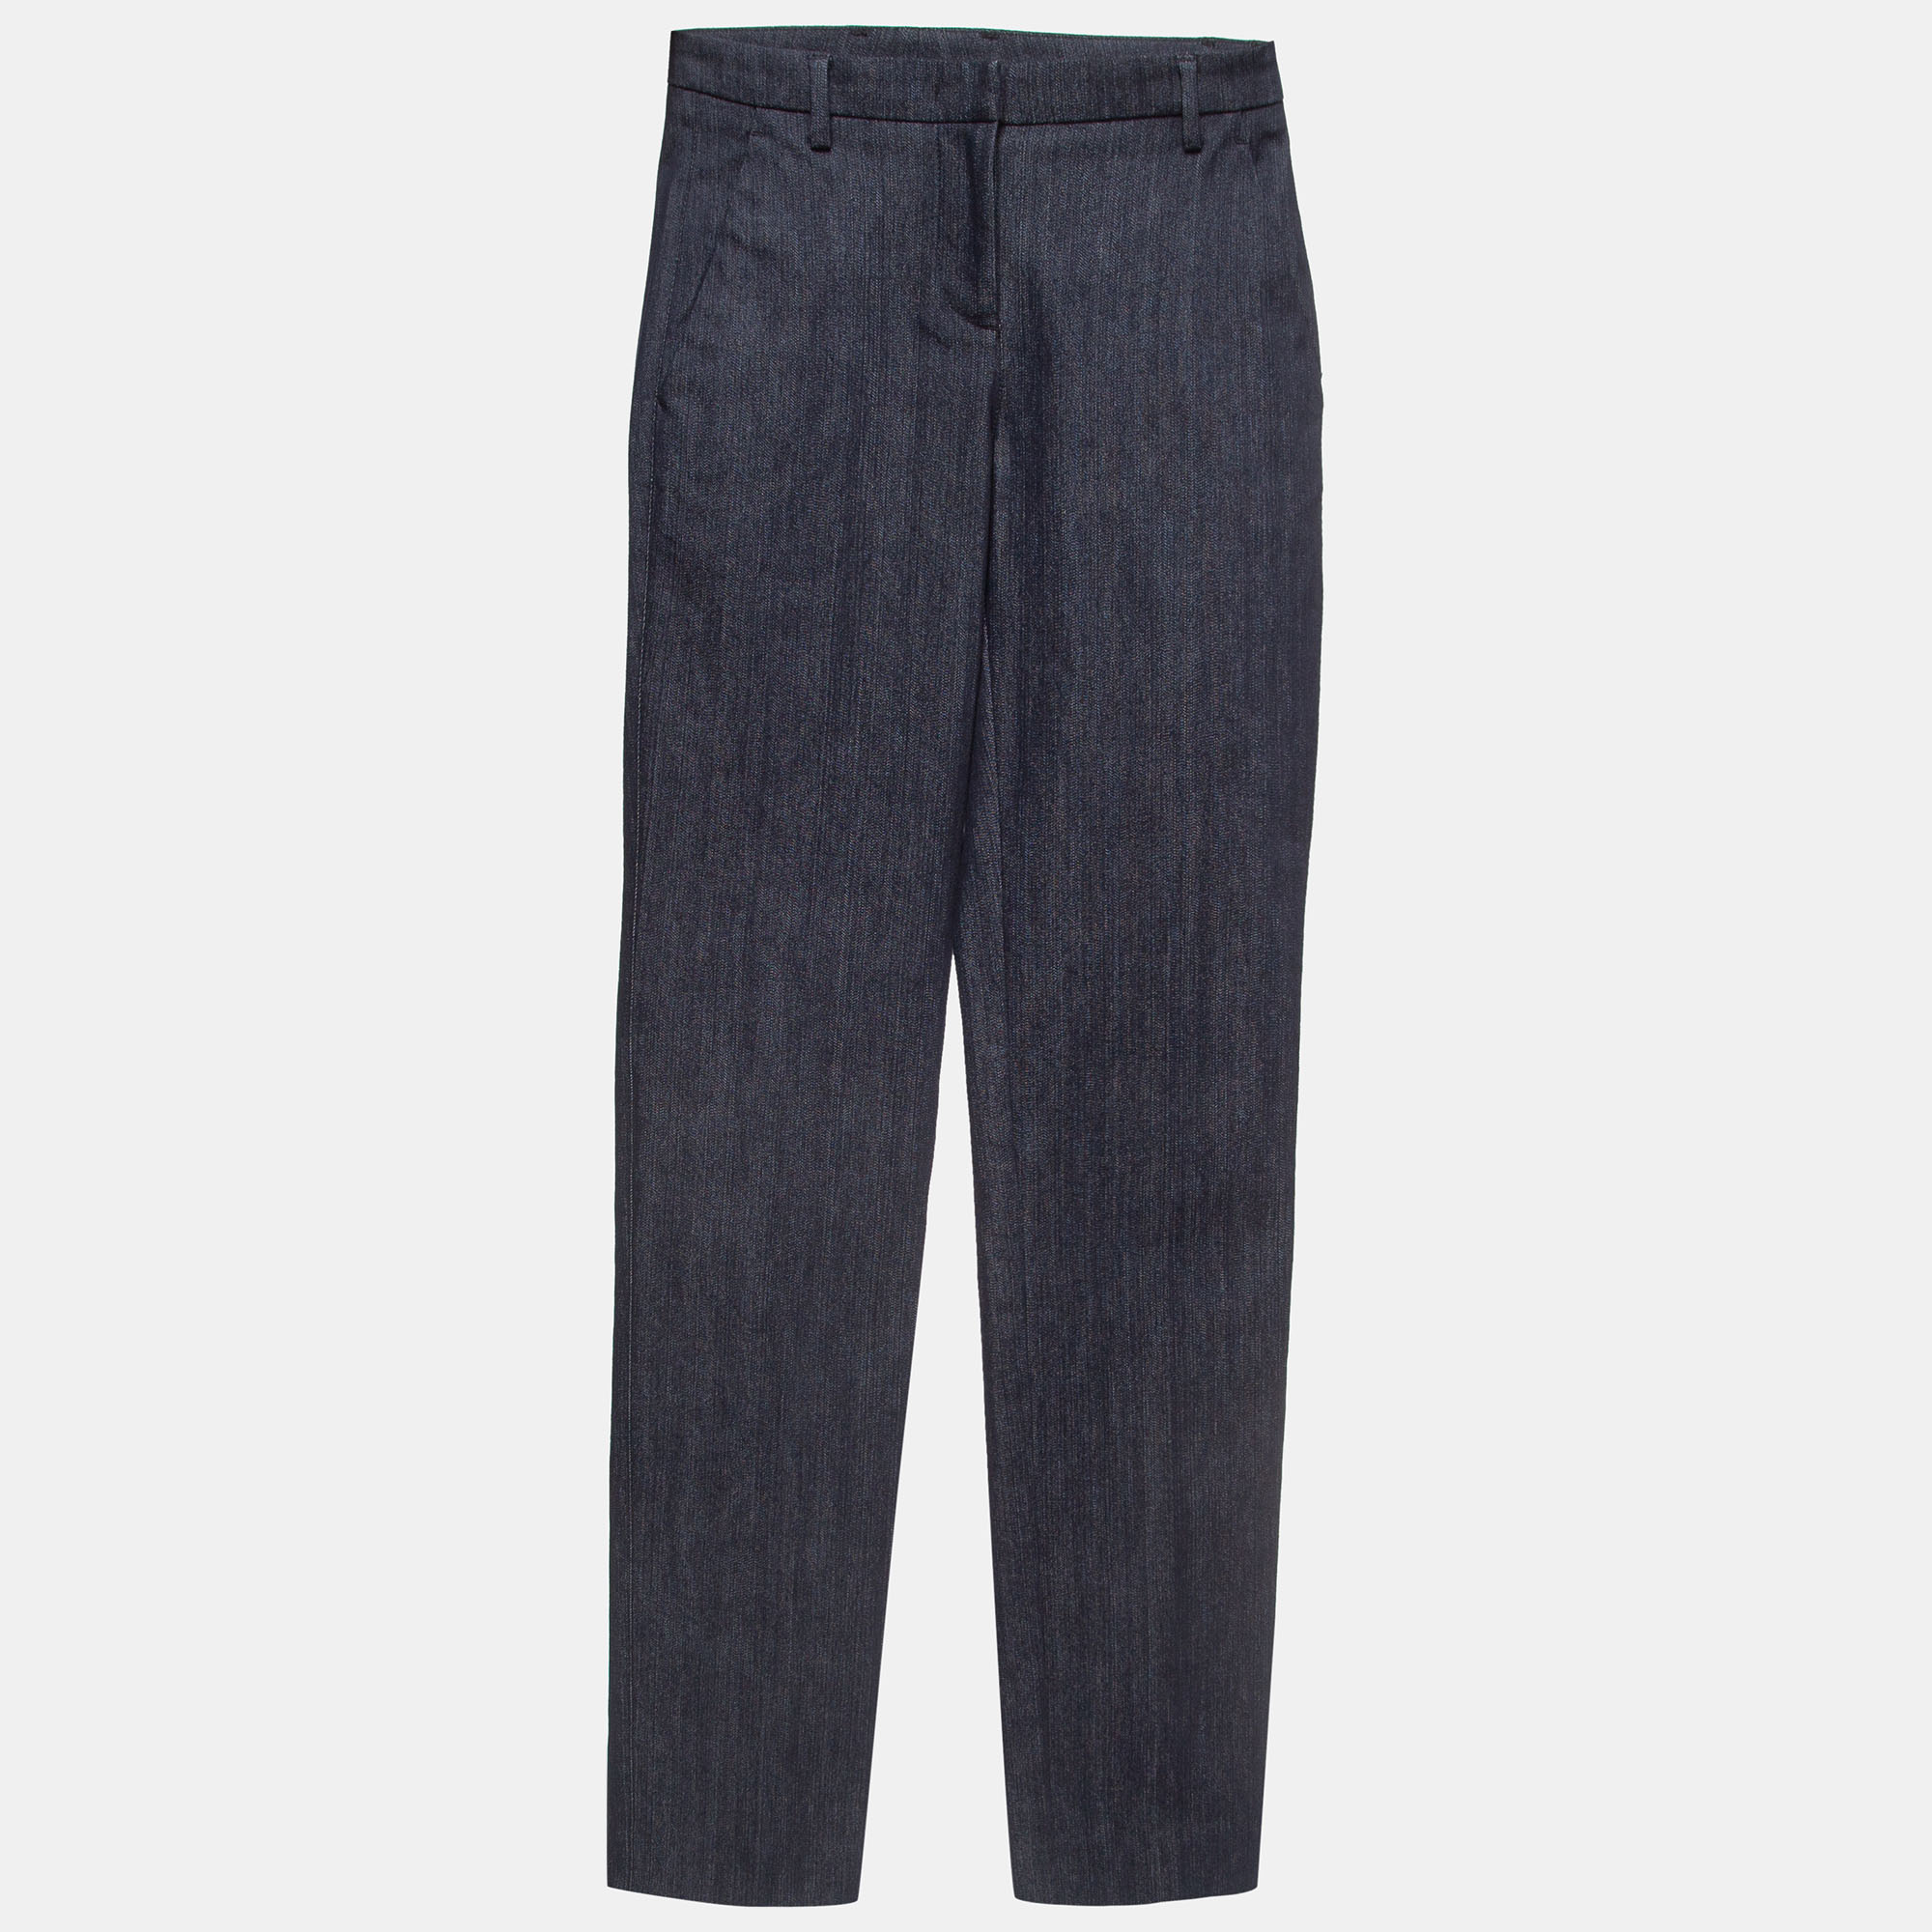 Moncler navy blue denim slim fit jeans m waist 28''